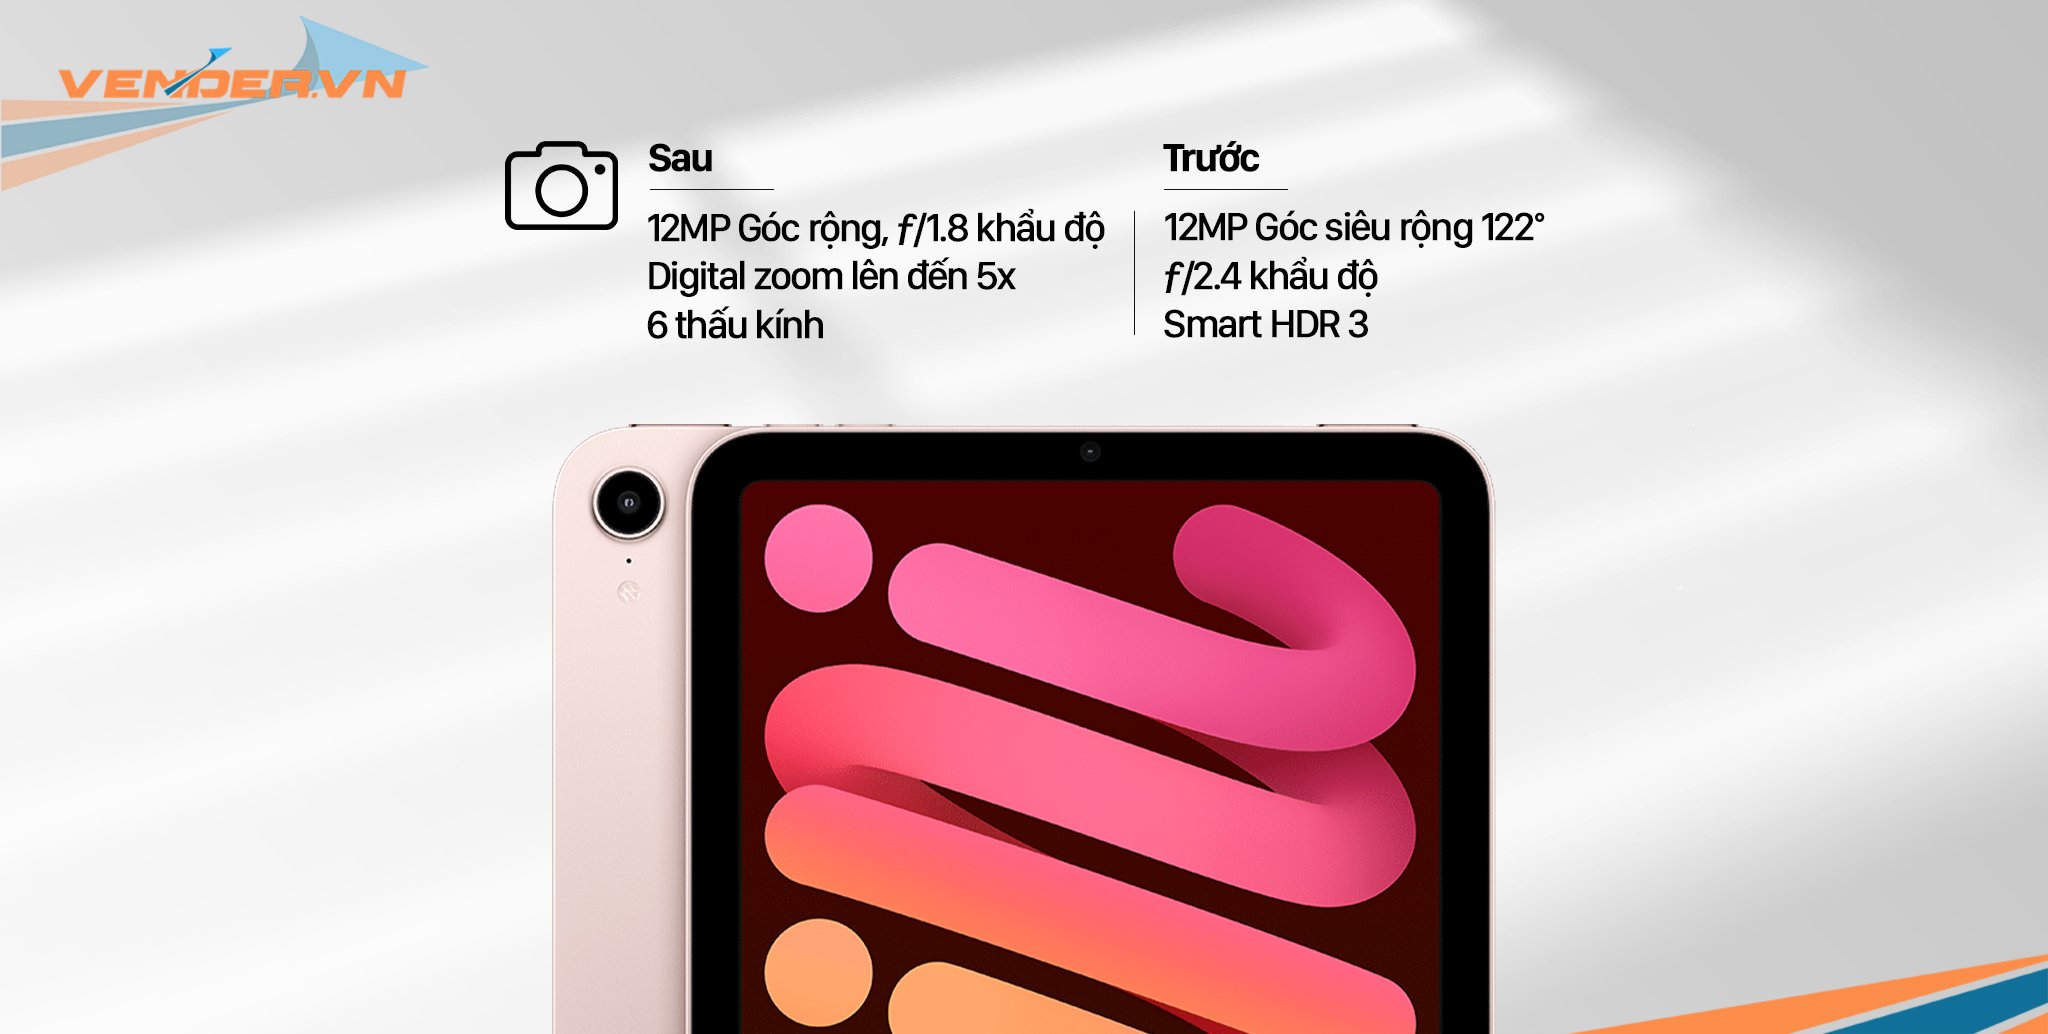 Đánh giá iPad mini 2021: Chiếc máy tính bảng nhỏ tuyệt nhất nhờ hàng loạt tân trang vượt trội